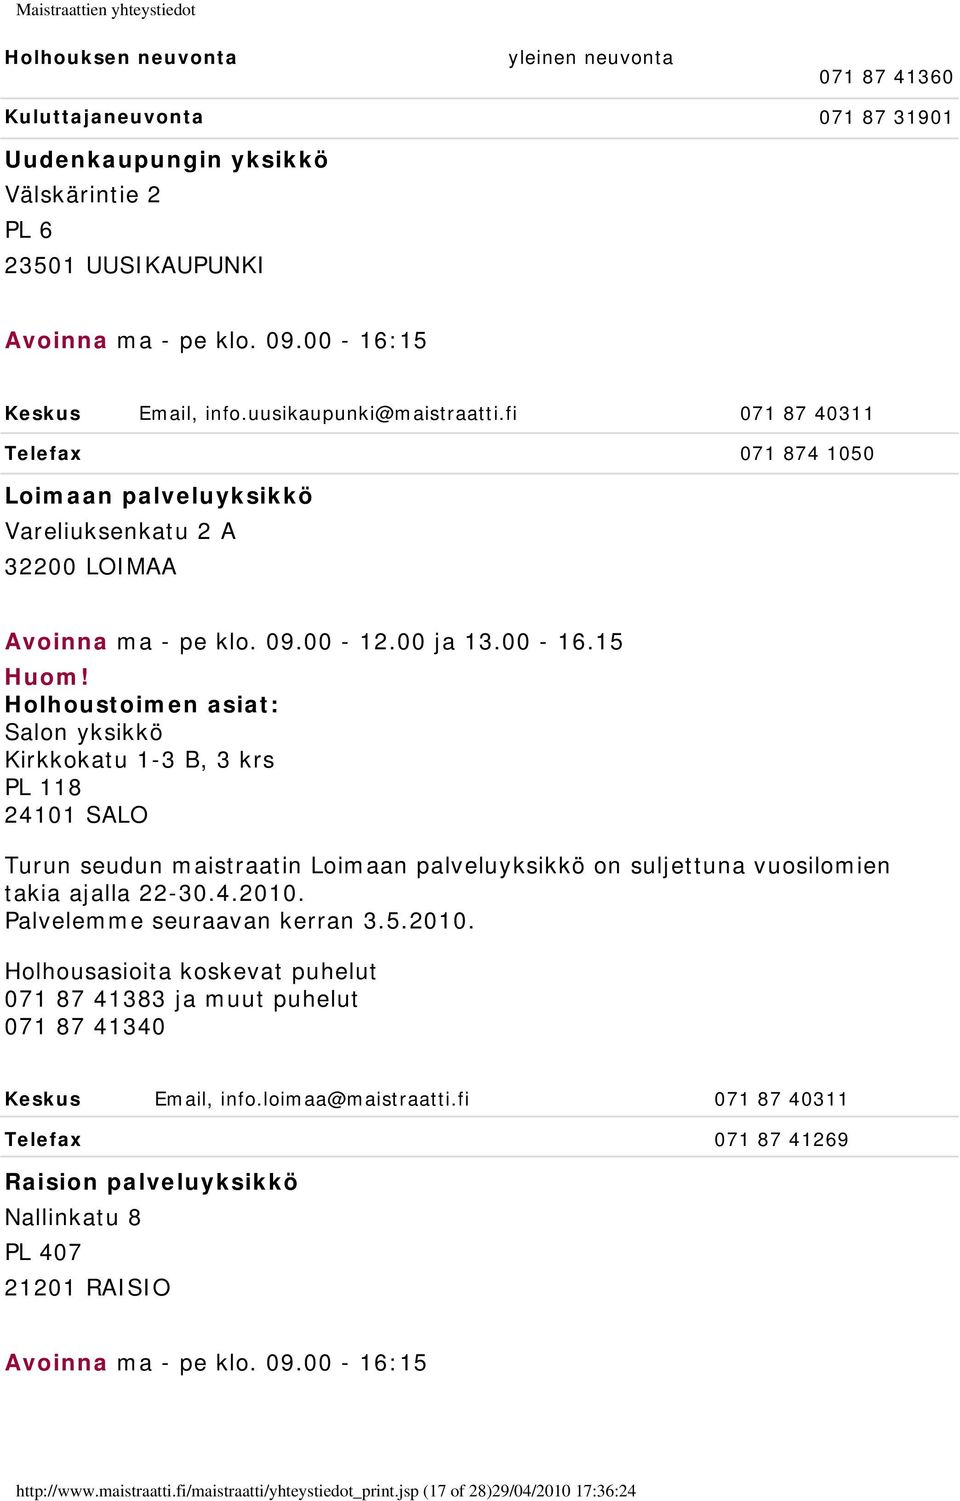 15 Holhoustoimen asiat: Salon yksikkö Kirkkokatu 1-3 B, 3 krs PL 118 24101 SALO Turun seudun maistraatin Loimaan palveluyksikkö on suljettuna vuosilomien takia ajalla 22-30.4.2010.